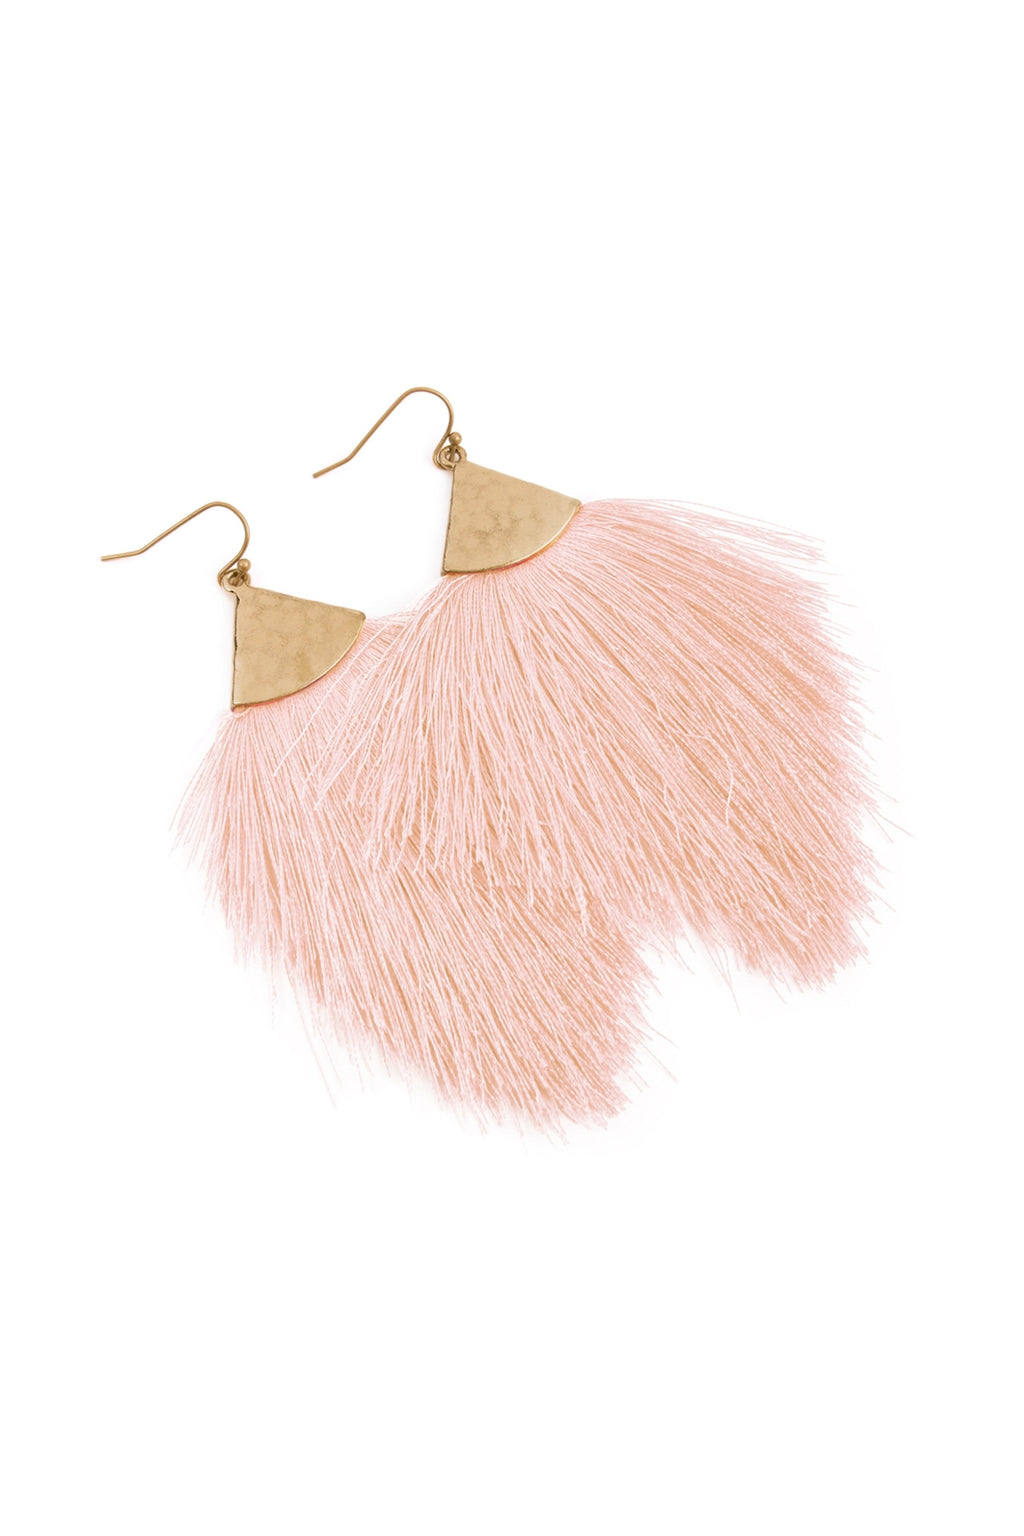 Light Pink Tassel with Hammered Metal Hook Drop Earrings - Pack of 6